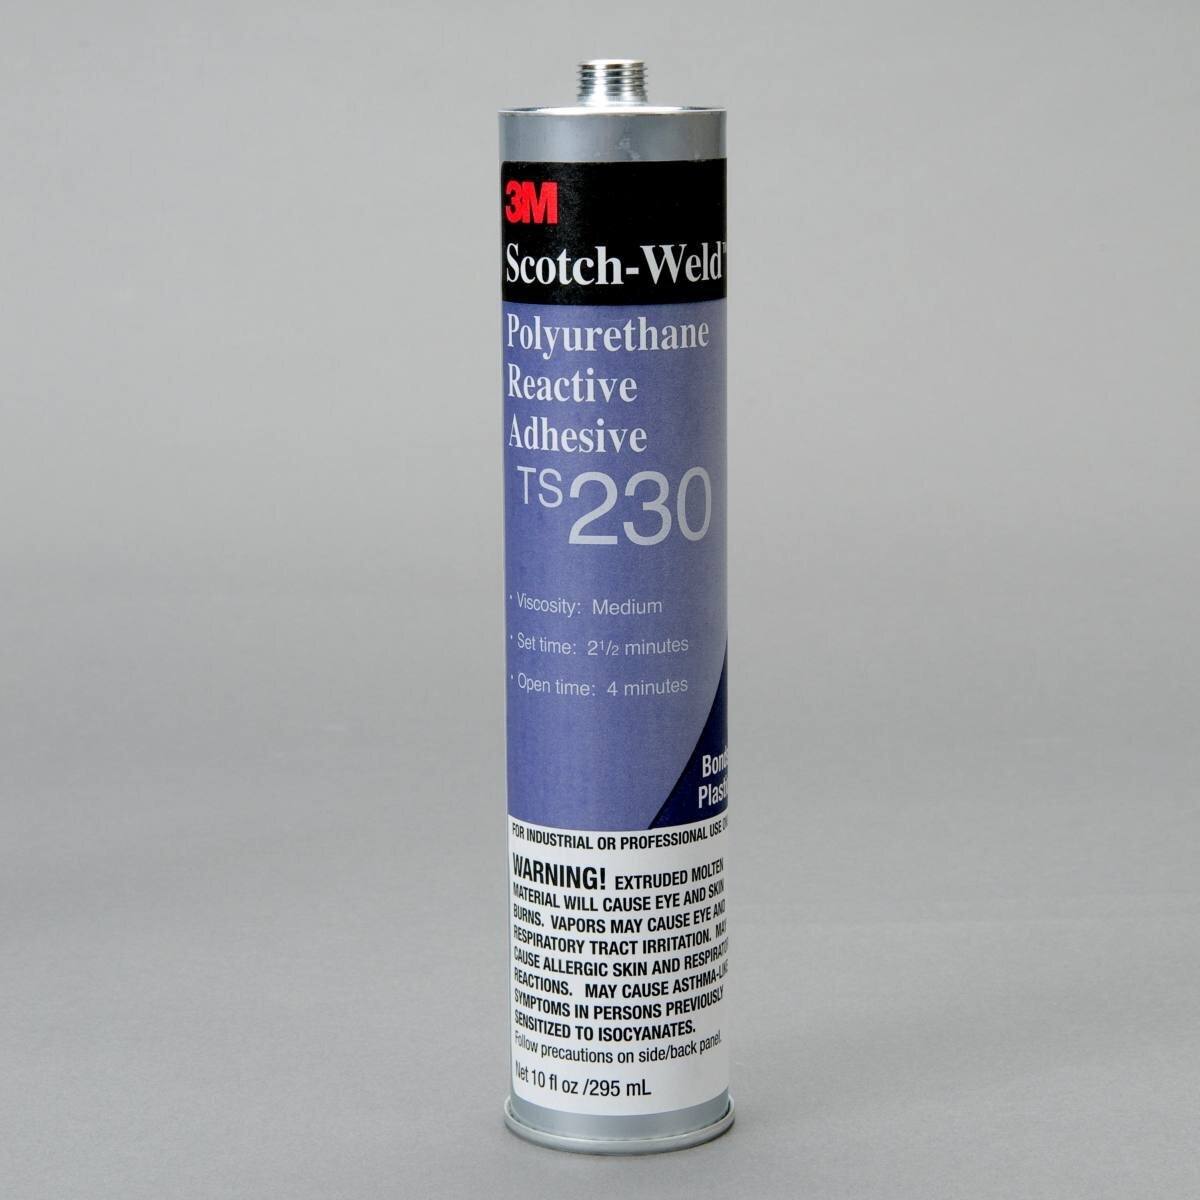 3M Scotch-Weld Colle thermofusible polyuréthane réactive TS 230, noire, 2 kg